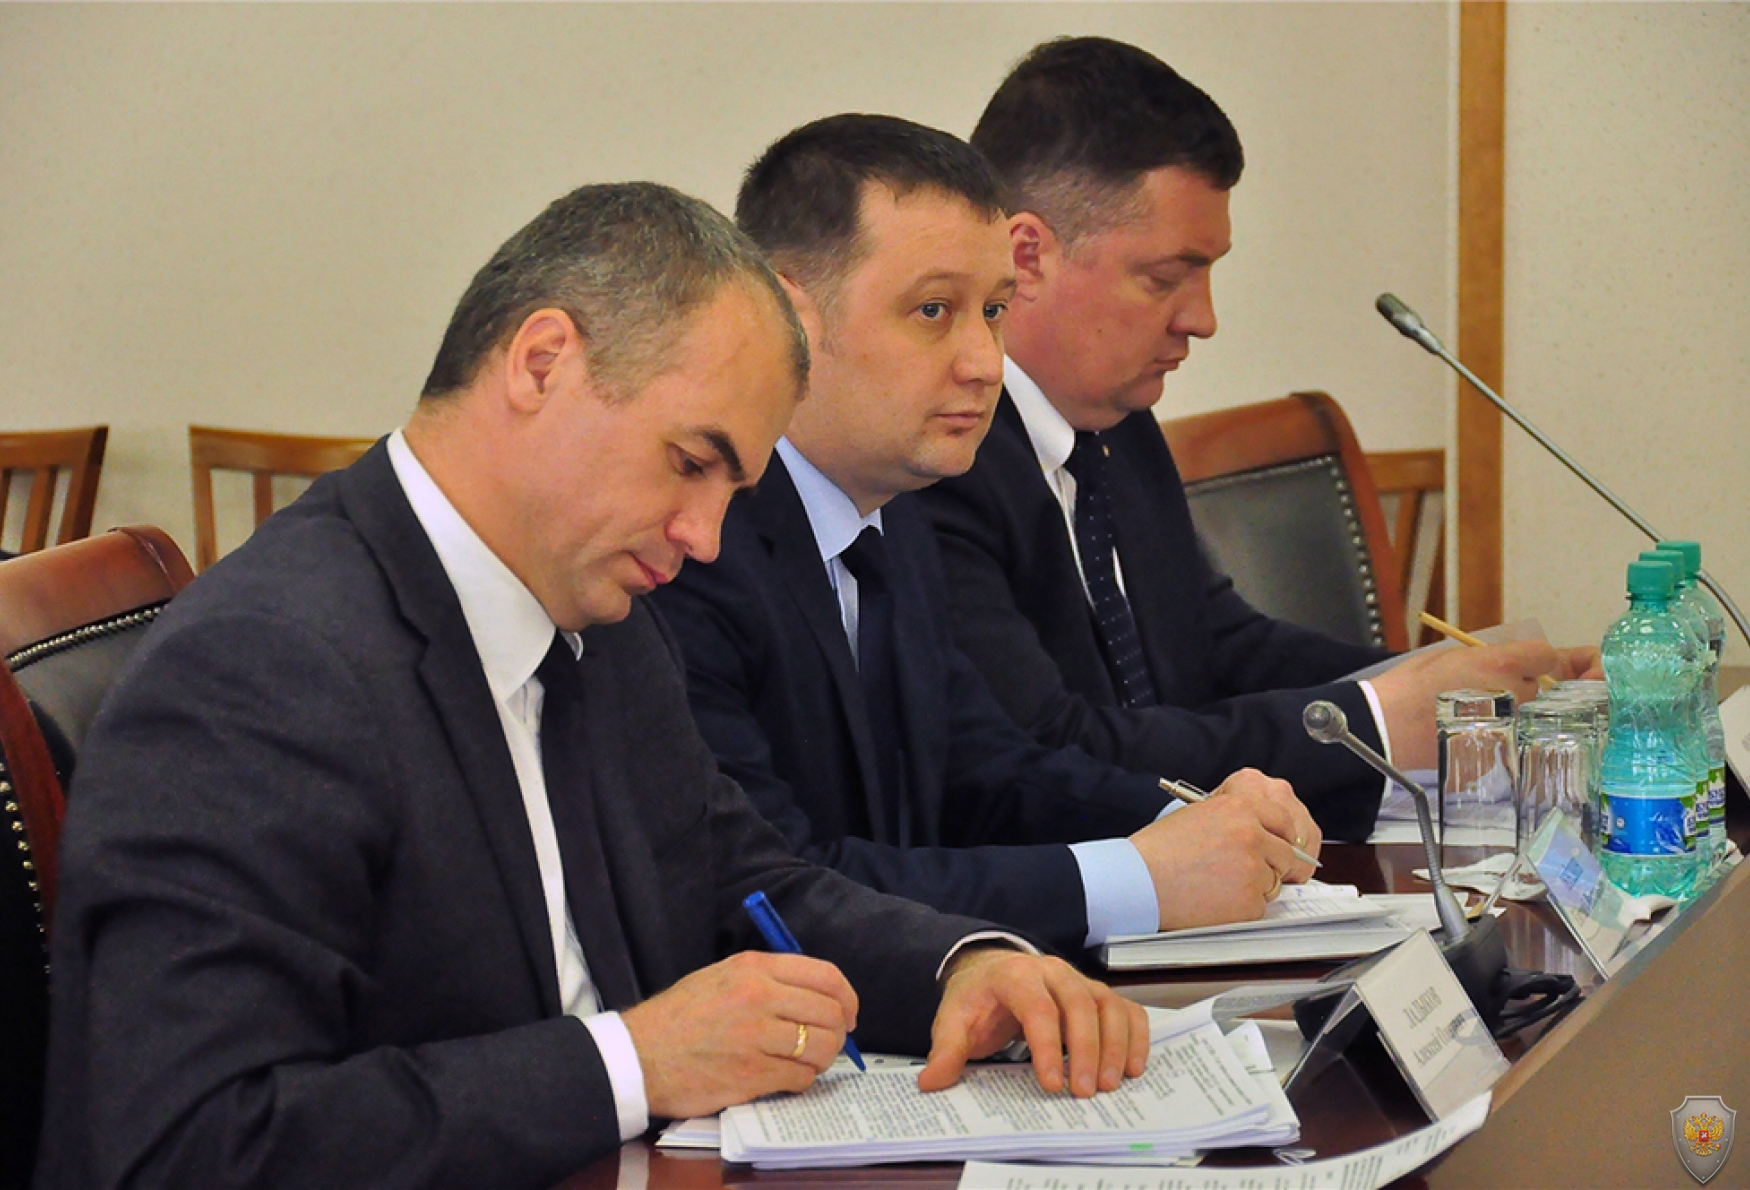 Совместное заседание антитеррористической комиссии и оперативного штаба в Чувашской Республике, г. Чебоксары